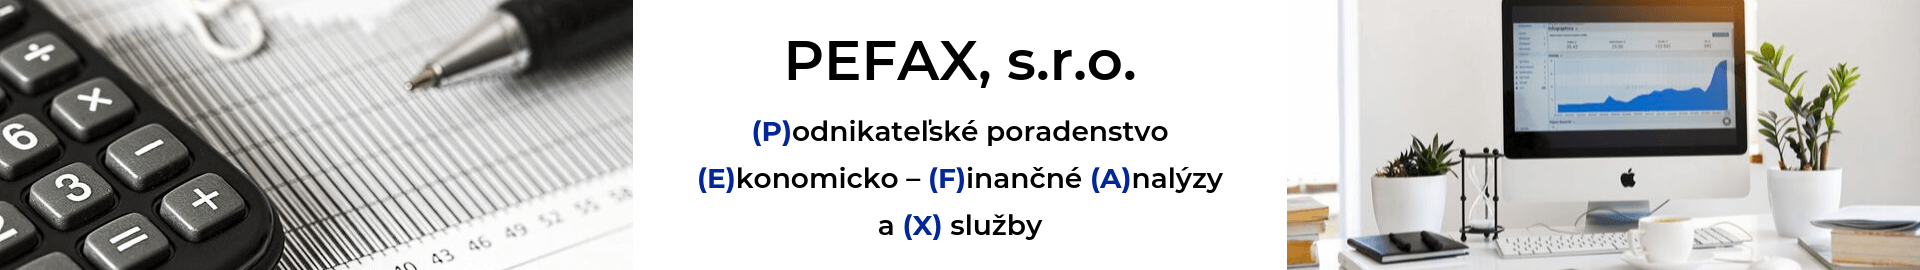 PEFAX, s.r.o. - podnikateľské poradenstvo, ekonomicko-finančné analýzy a služby